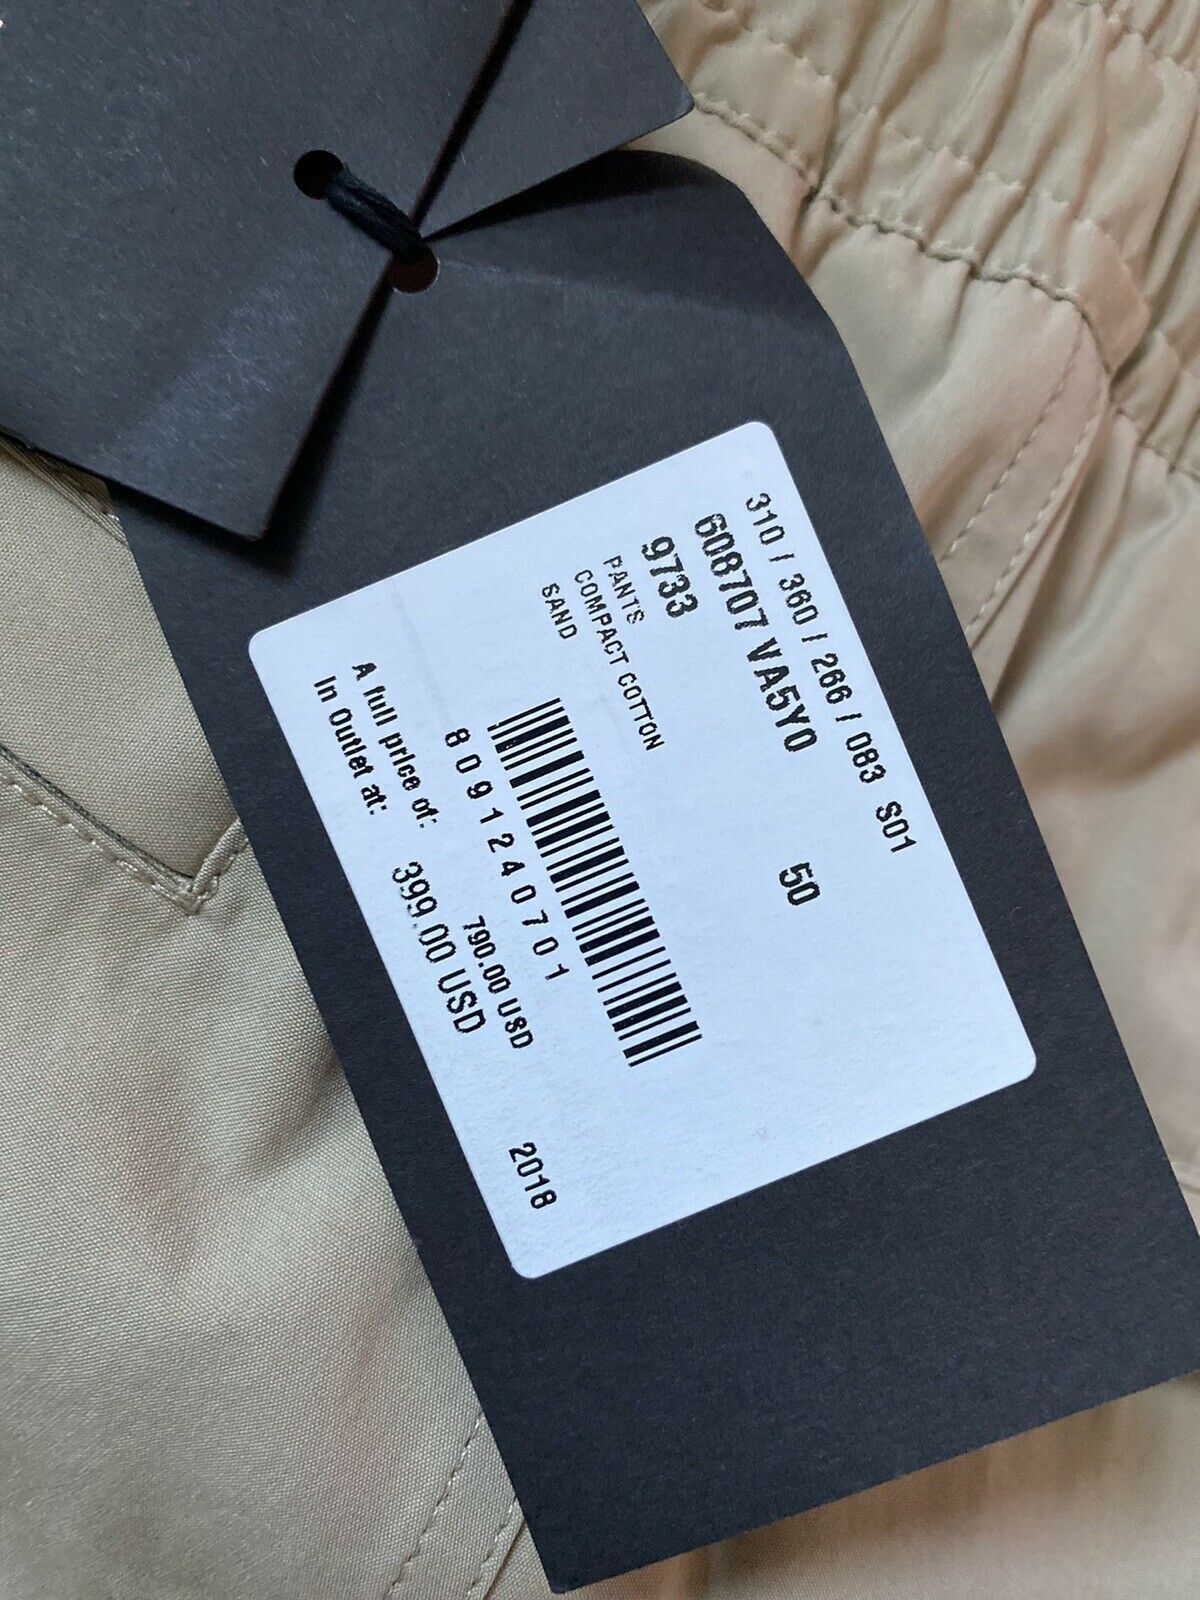 NWT $790 Повседневные брюки Bottega Veneta Коричневые, размер 34 США (50 евро) 608707 Италия